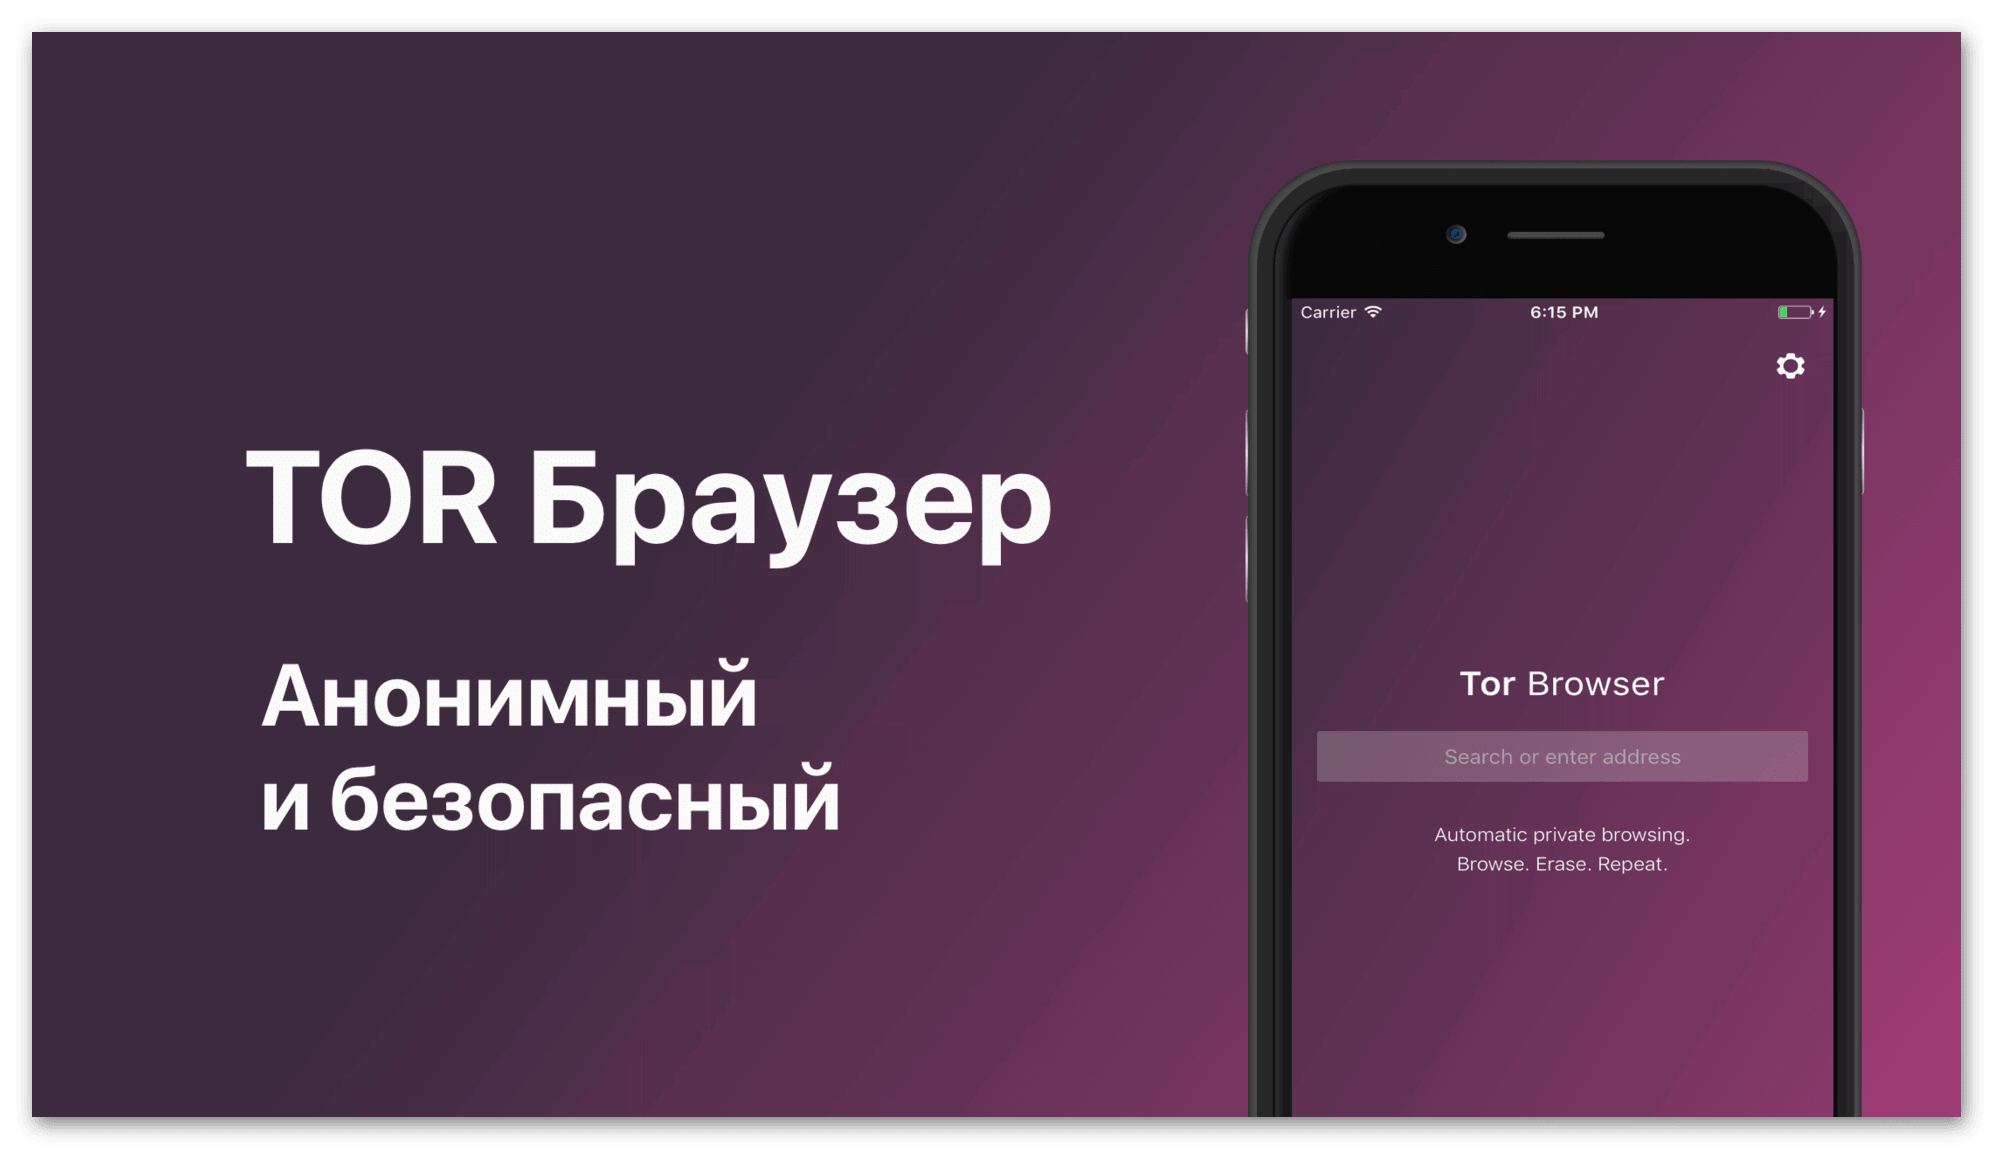 Тор браузер скачать бесплатно на русском ios megaruzxpnew4af тор браузер не отвечает mega